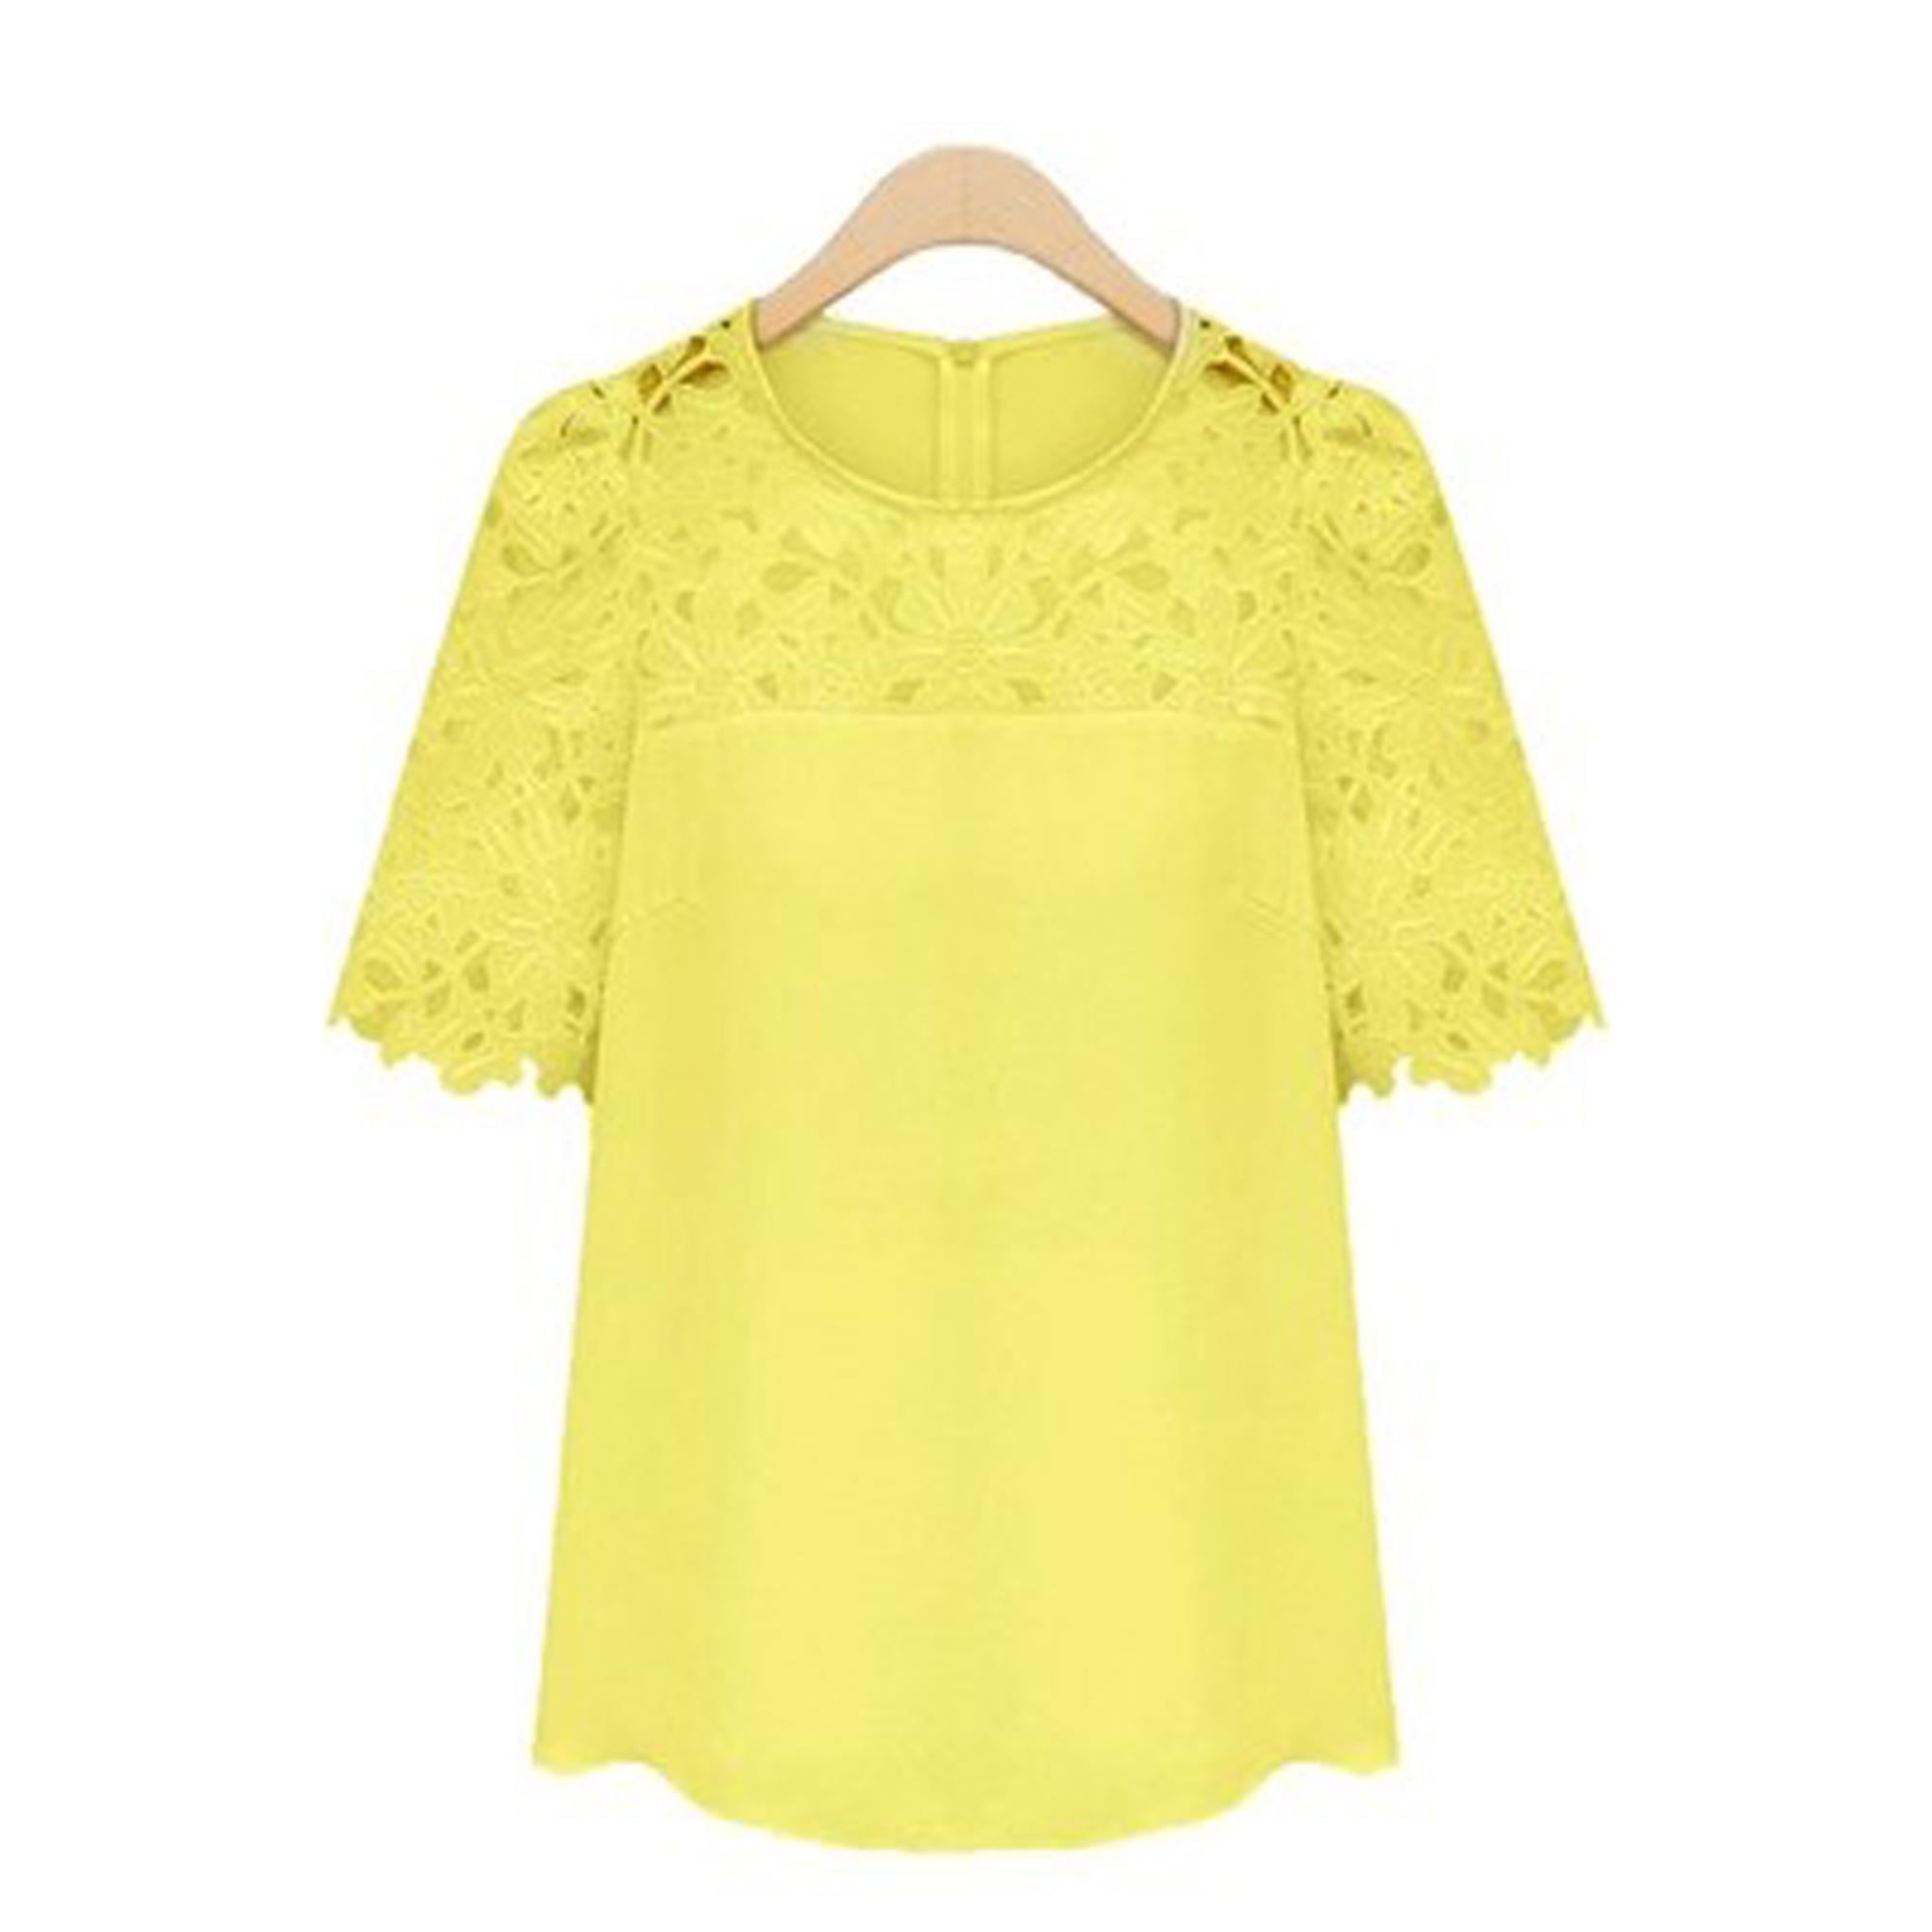 Junior Short Sleeves Formal Wear Crochet Lace Blouse Yellow | Walmart ...